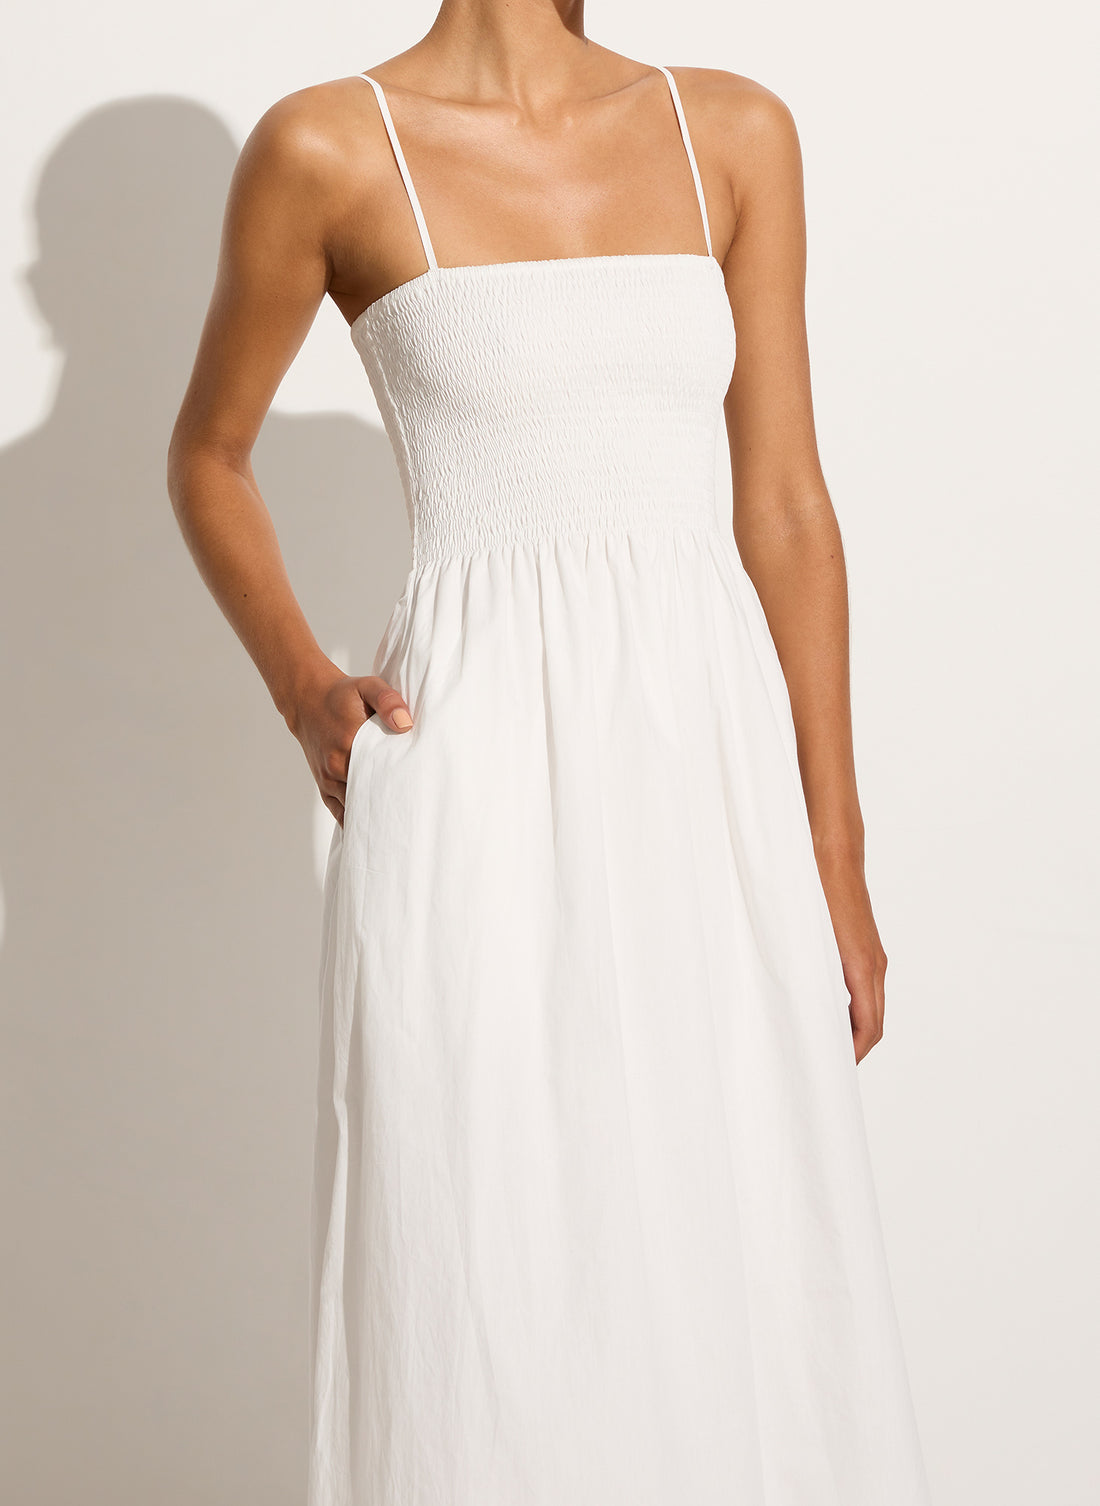 Tergu Maxi Dress White